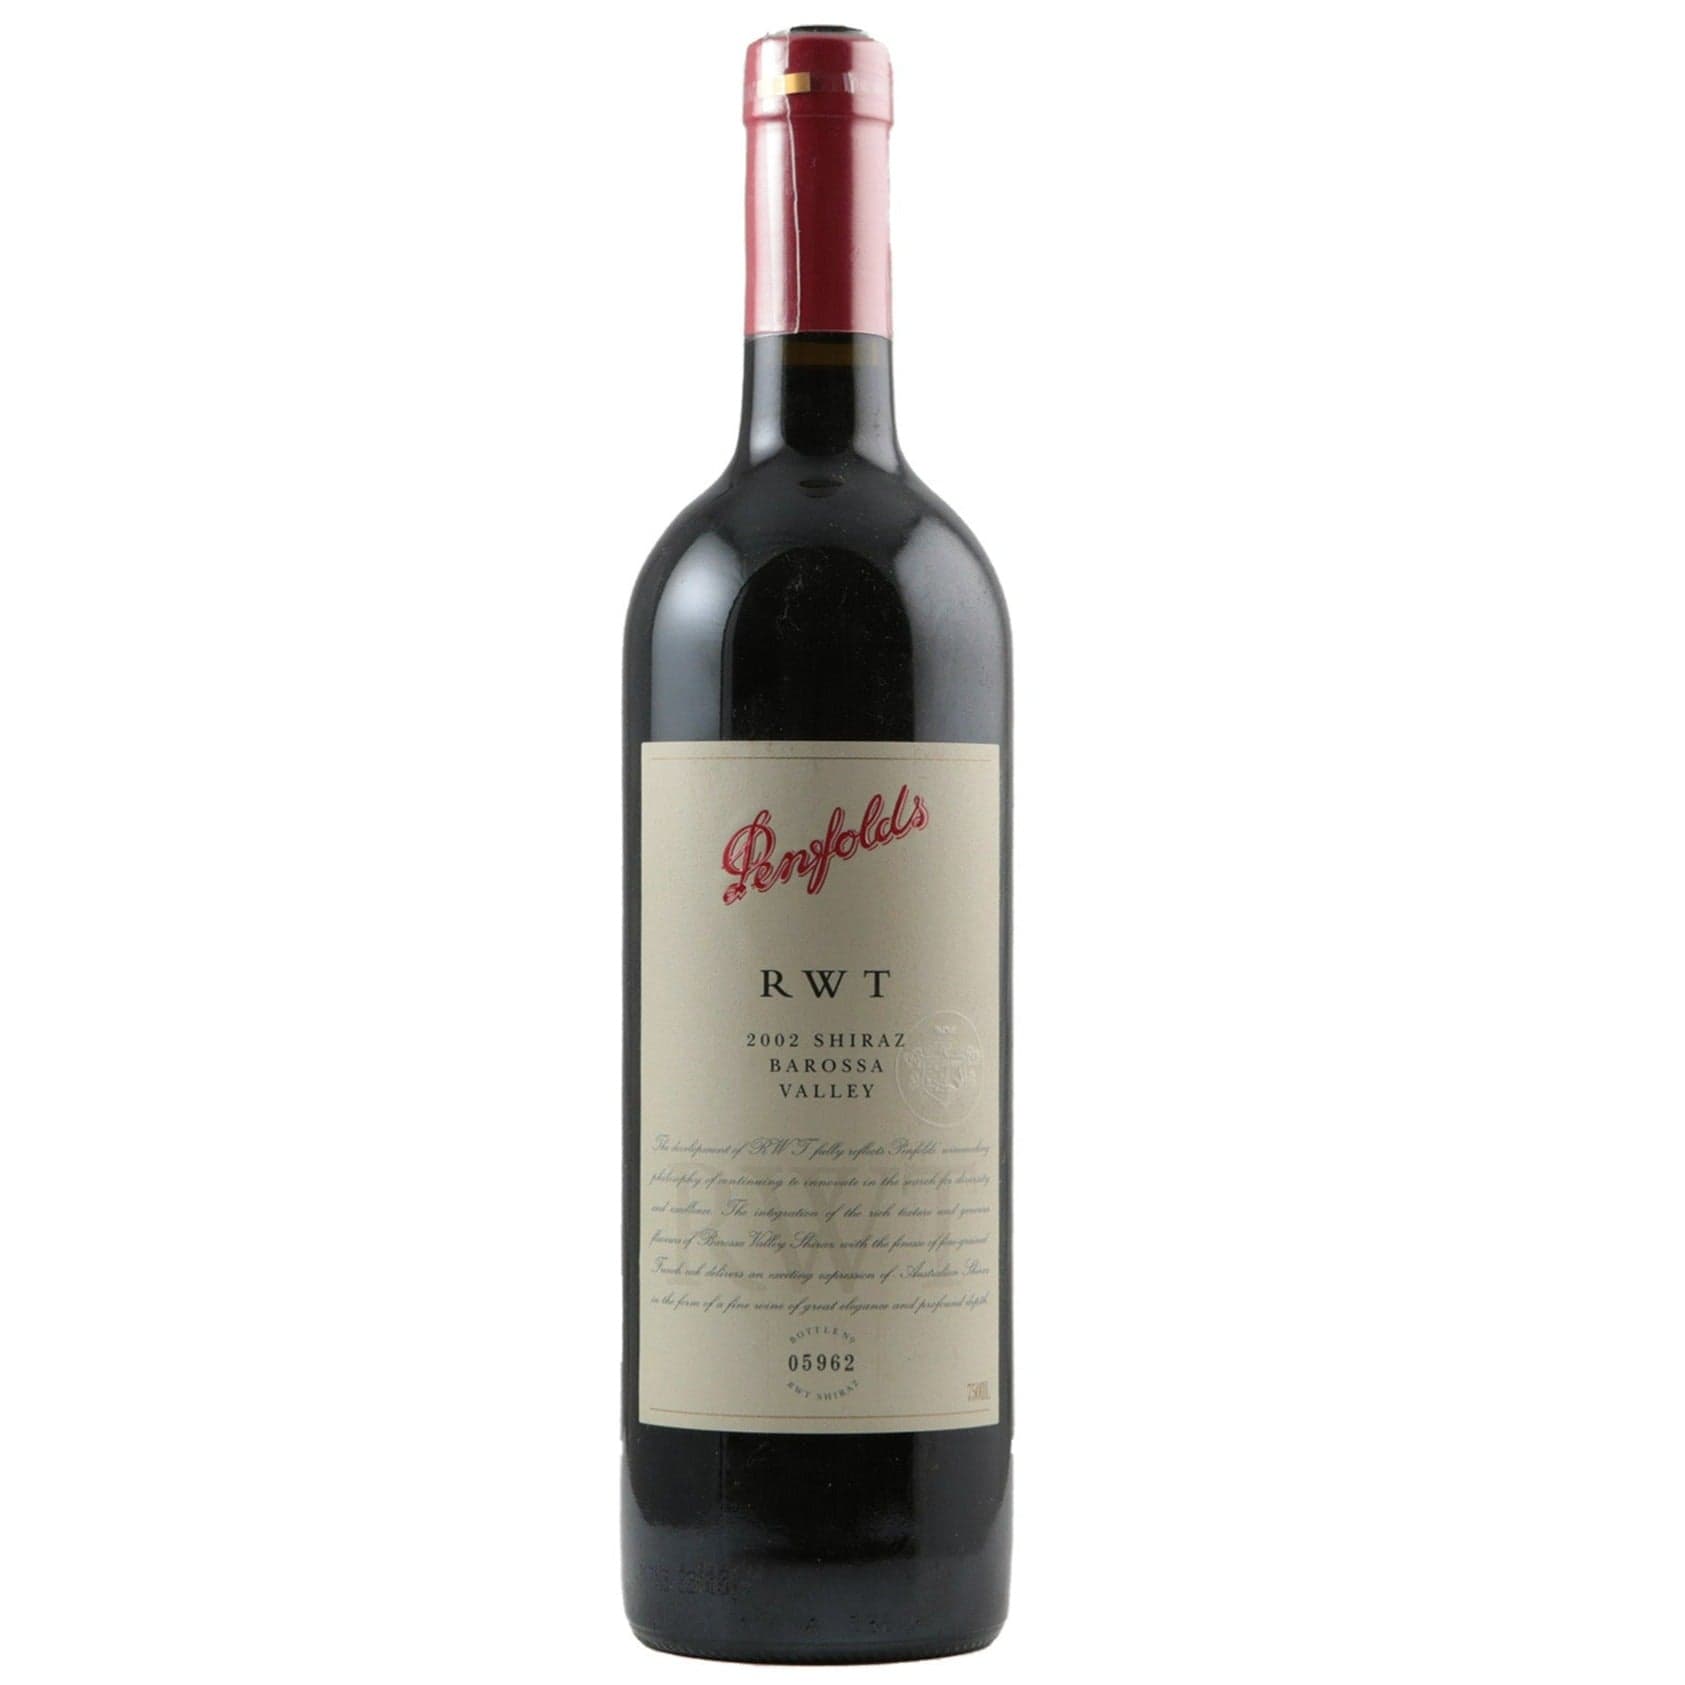 Single bottle of Red wine Penfolds, RWT (now Bin 798), Barossa Valley, 2002 100% Shiraz